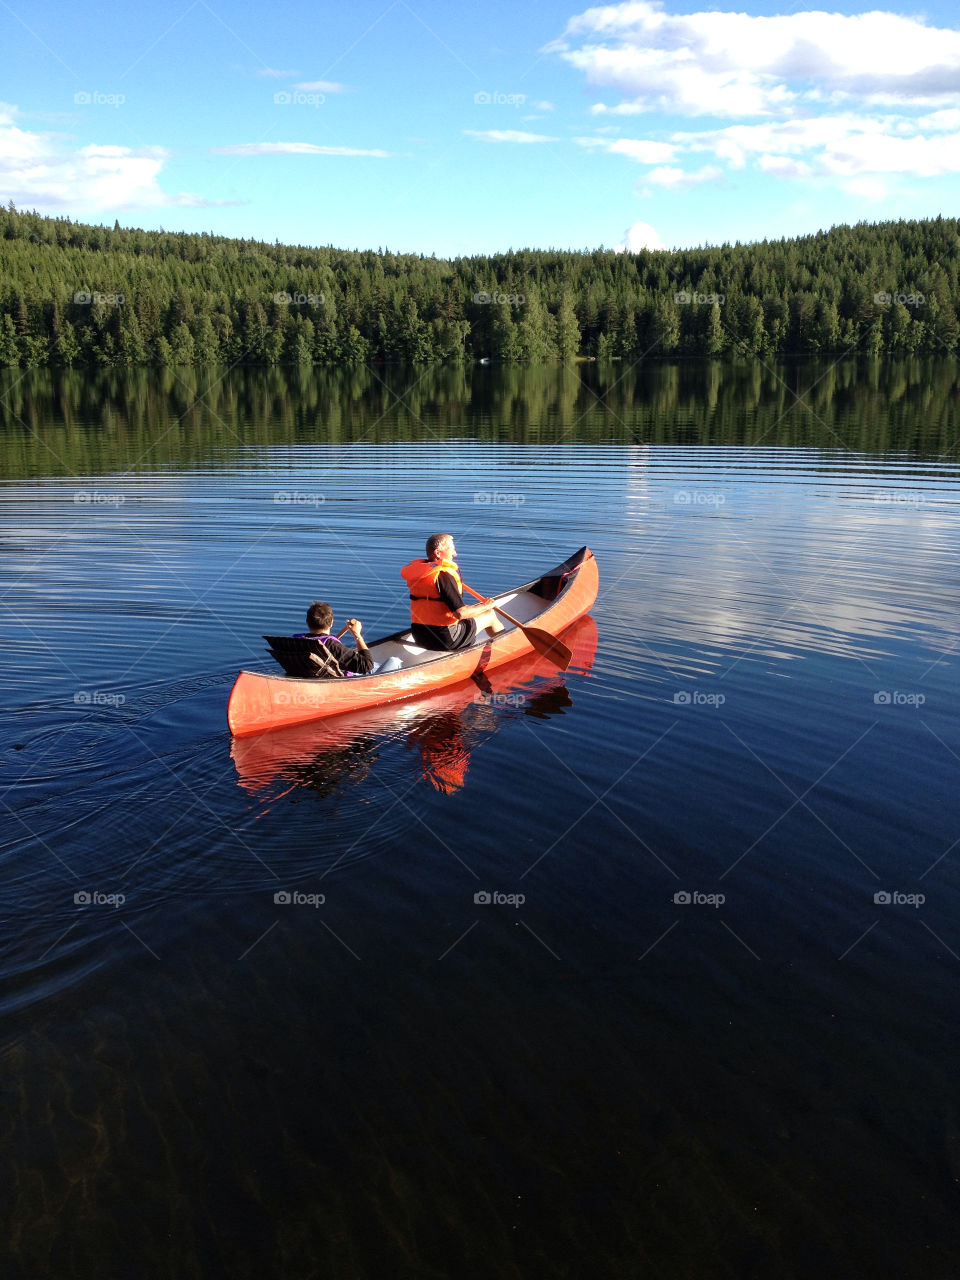 The lake Logärden in province Dalarna in Sweden.